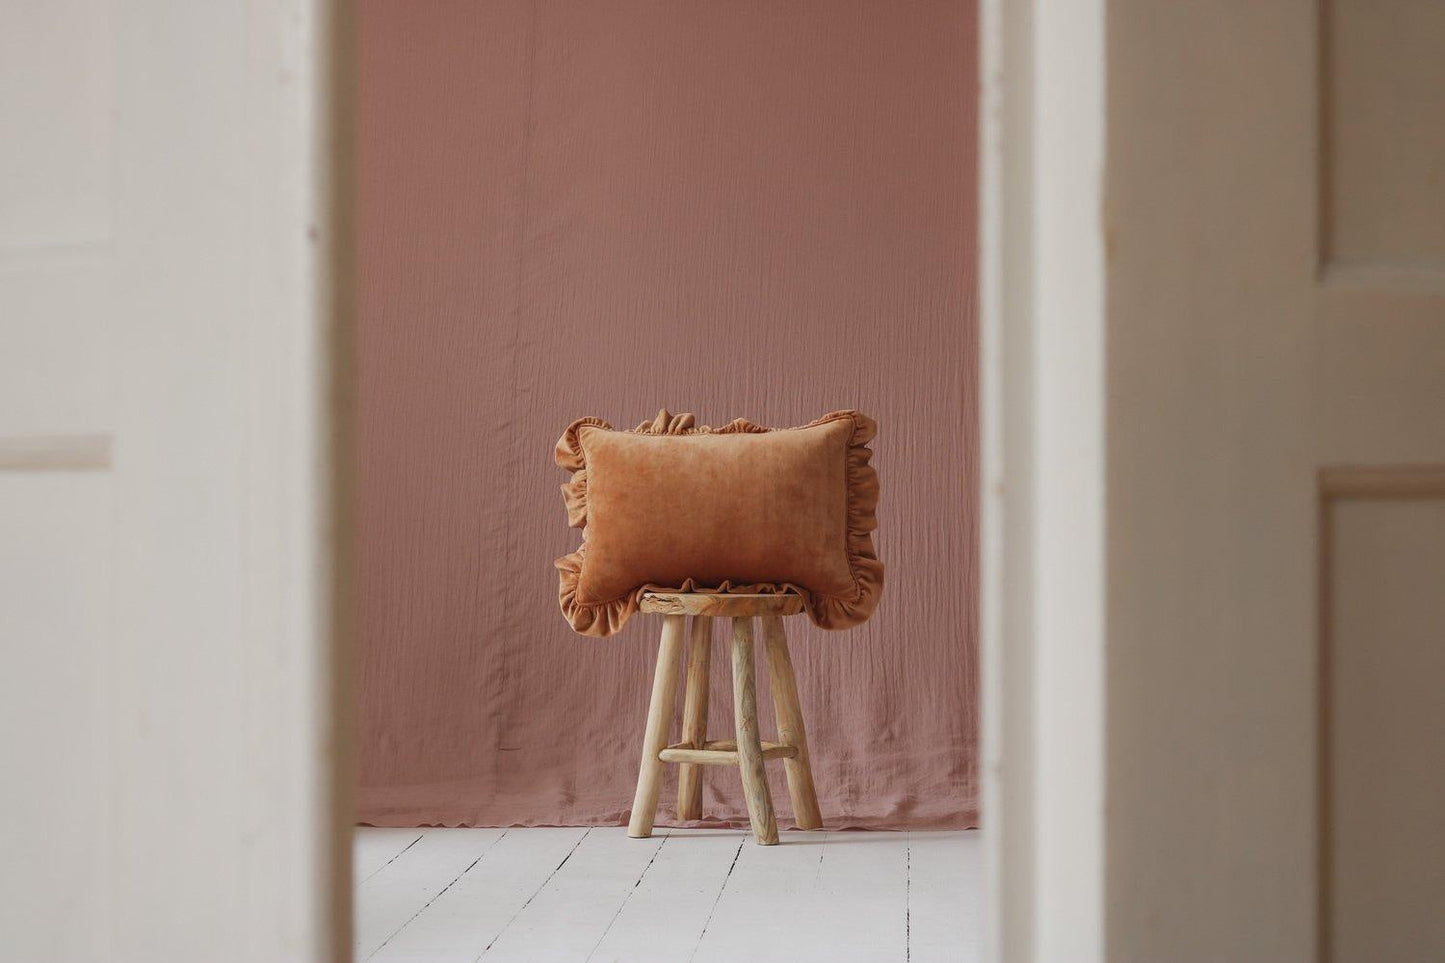 Pillow with Frill “Caramel” Soft Velvet | Kids Room & Nursery Decor